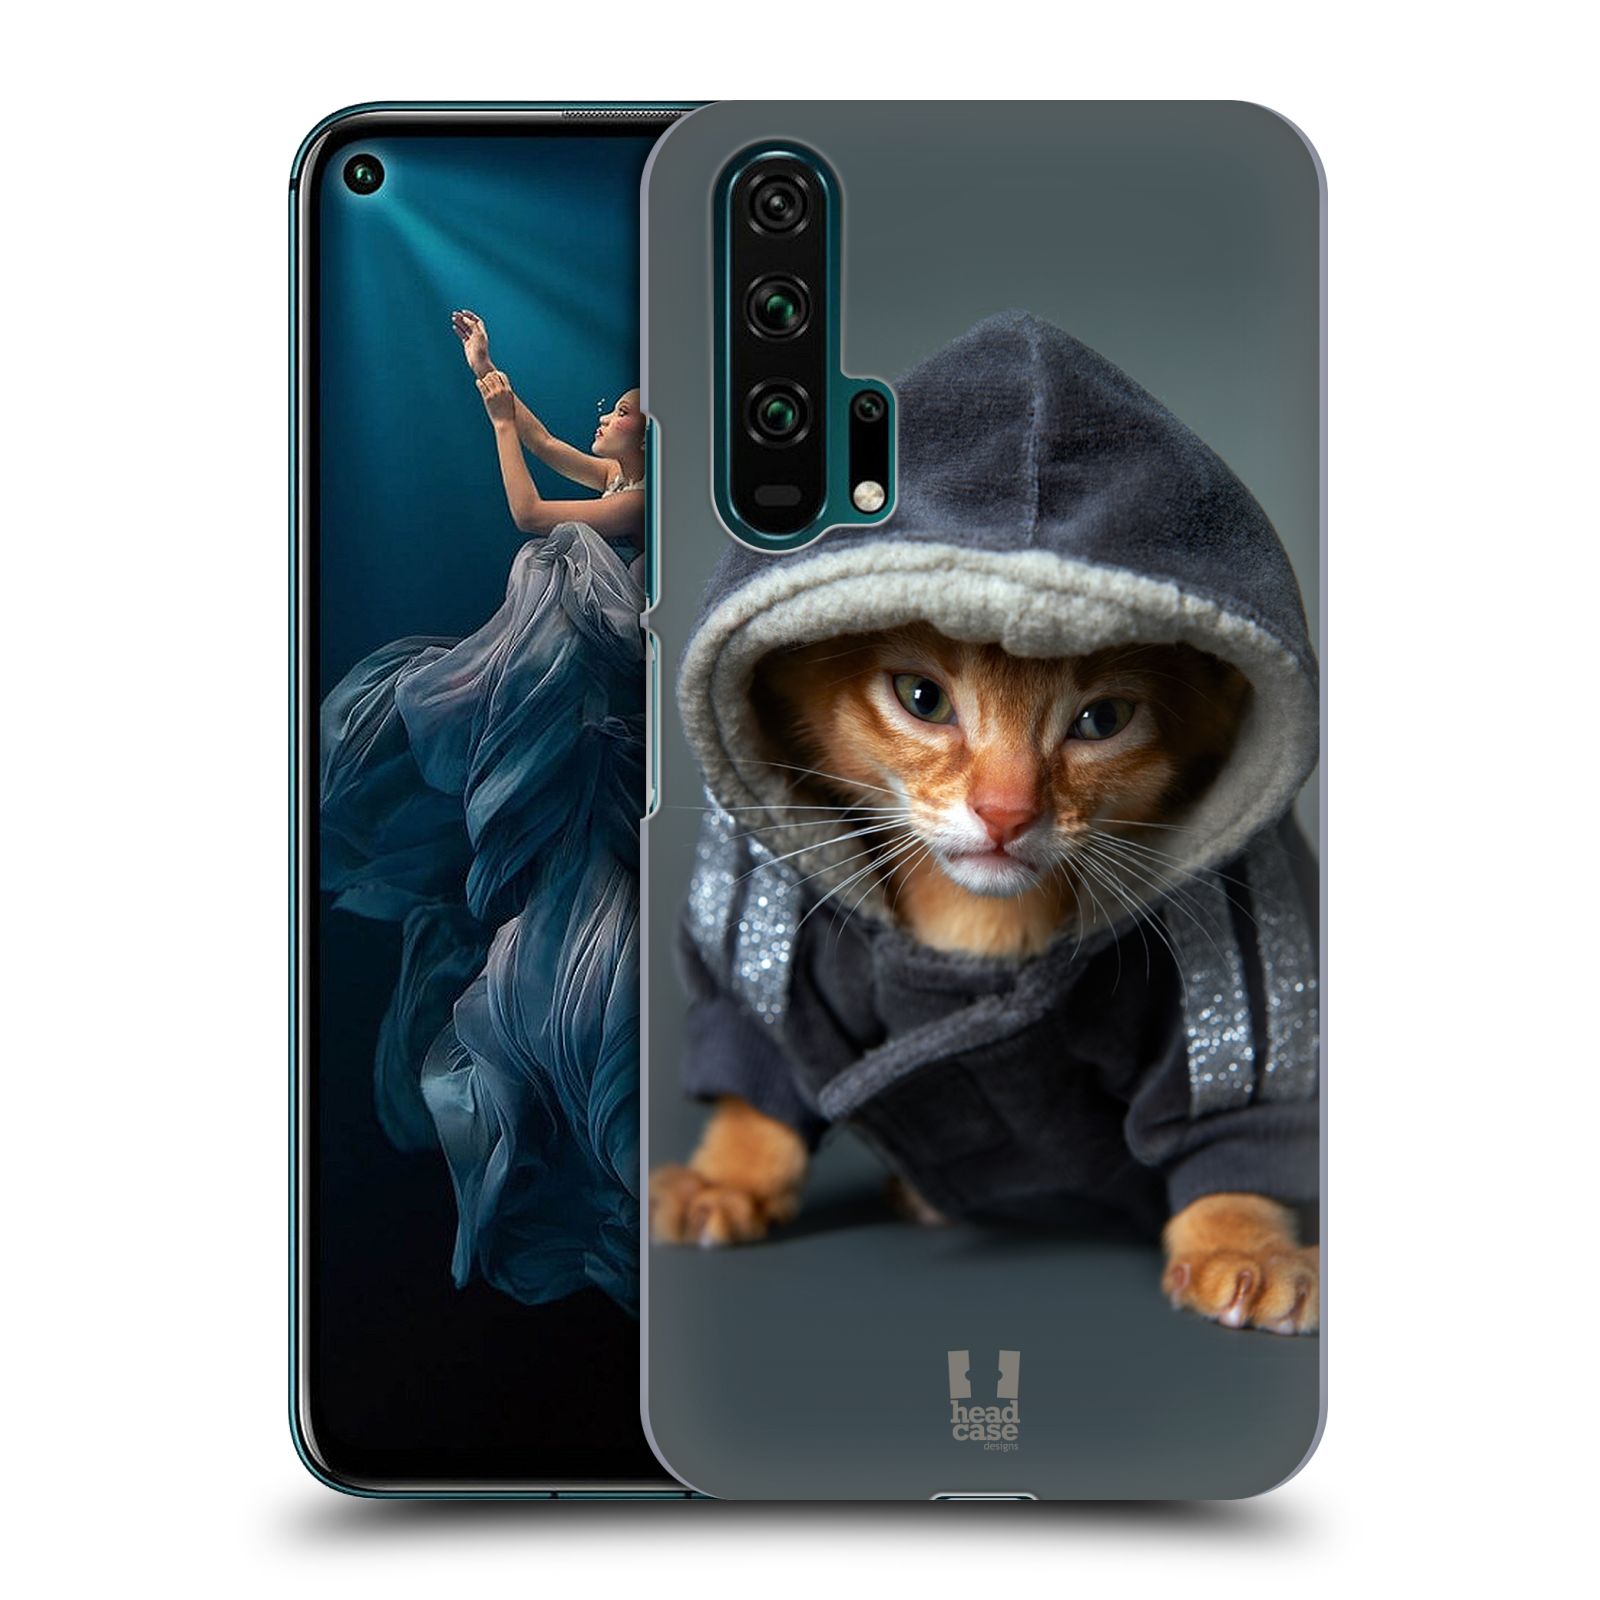 Pouzdro na mobil Honor 20 PRO - HEAD CASE - vzor Legrační zvířátka kotě/kočička s kapucí